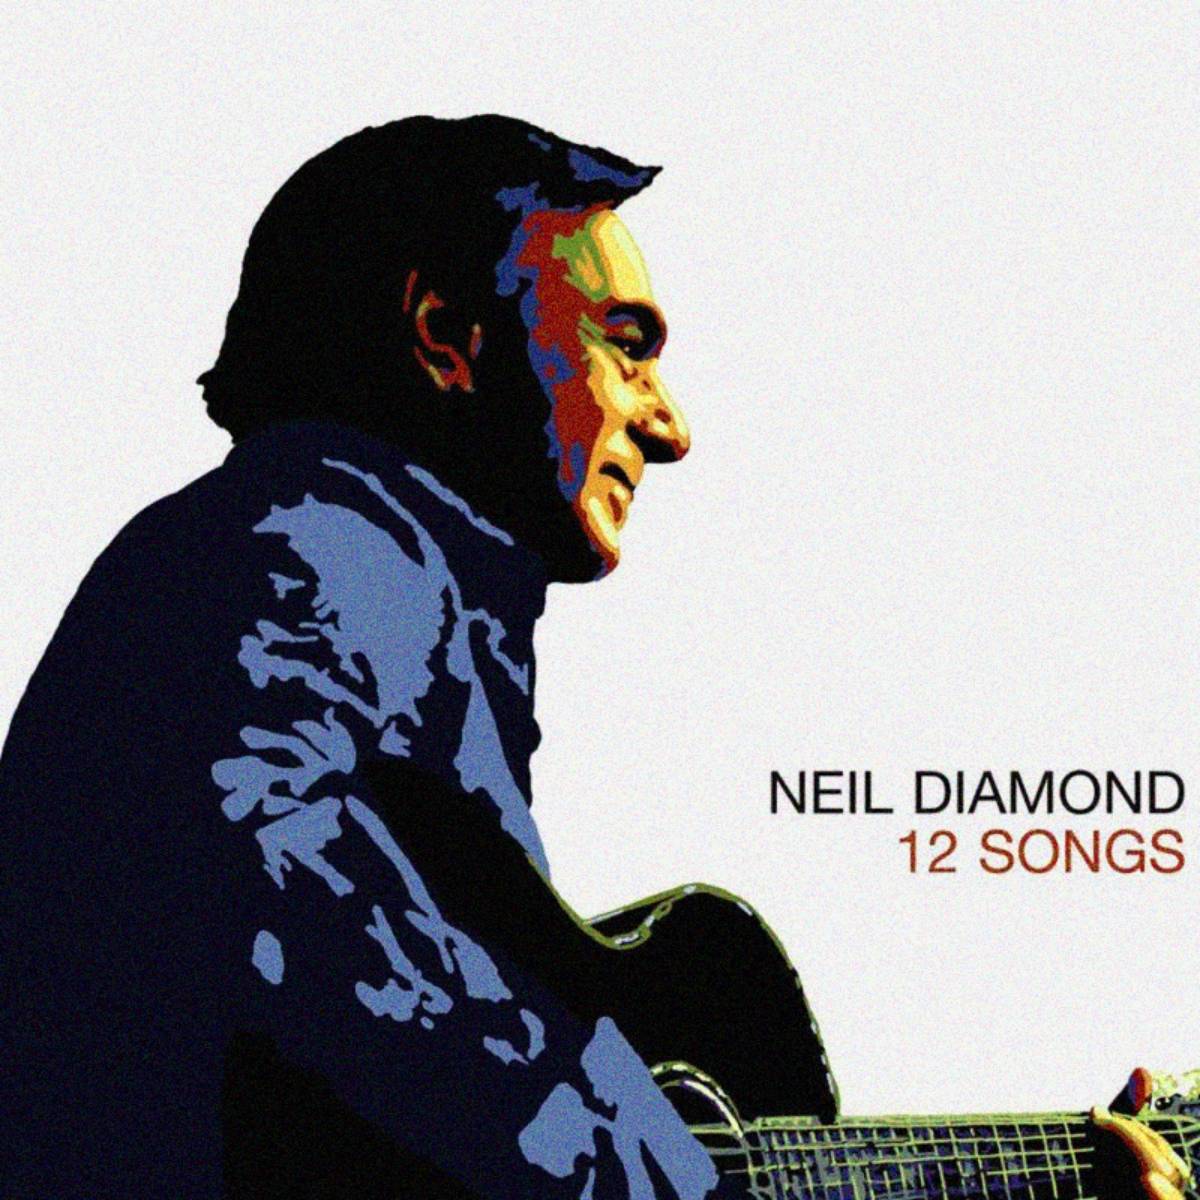 Neil Diamond - "12 Songs" (2005)